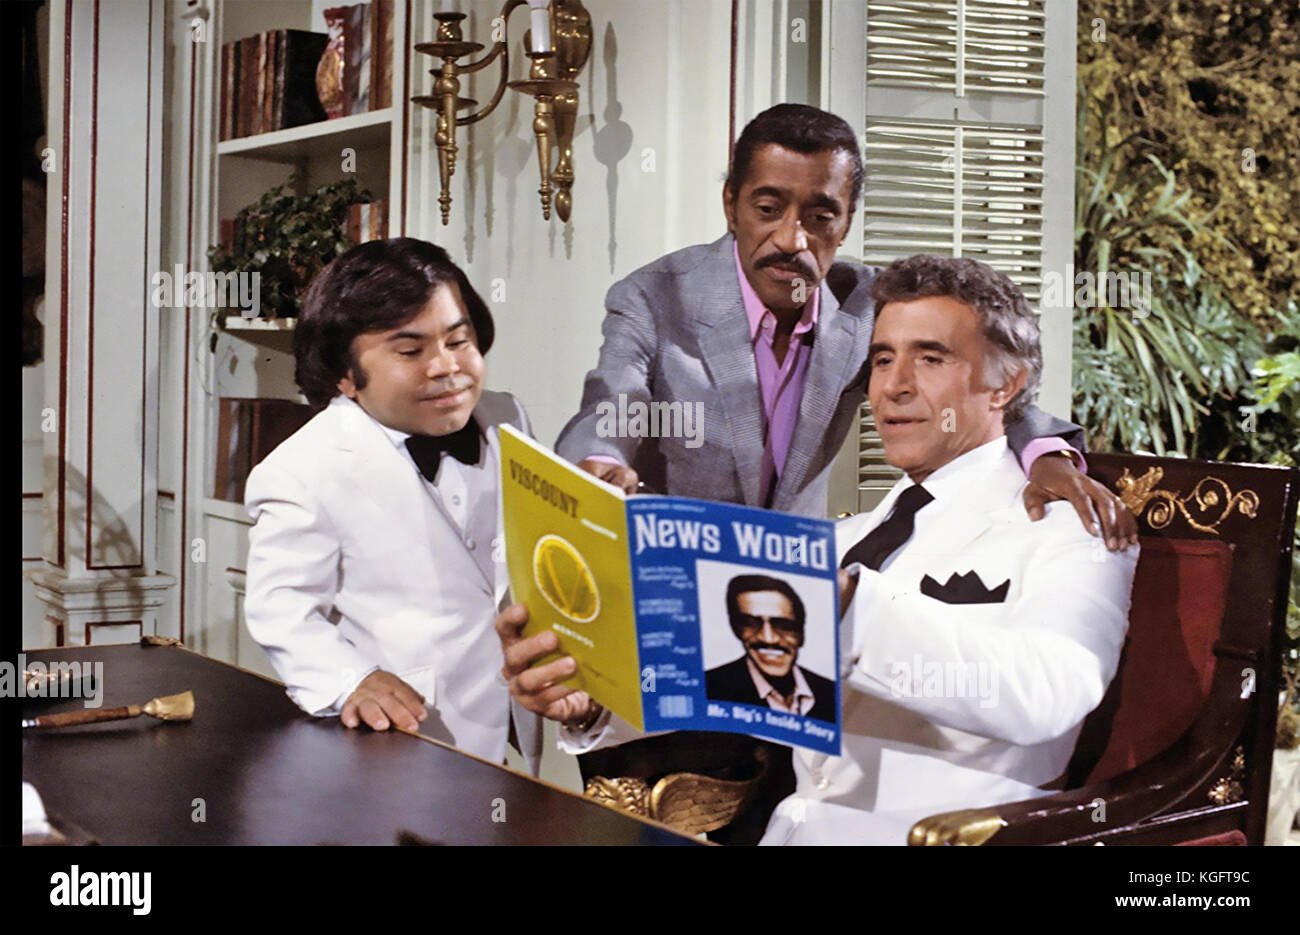 Fantasy ISLAND ABC serie TV 1977-1984 con Ricardo Montalban a destra, Herve Villechaize e guest star Sammy Davis Jnr nel 1984 episodio 'Mr. Bojangles e il Dancer' Foto Stock